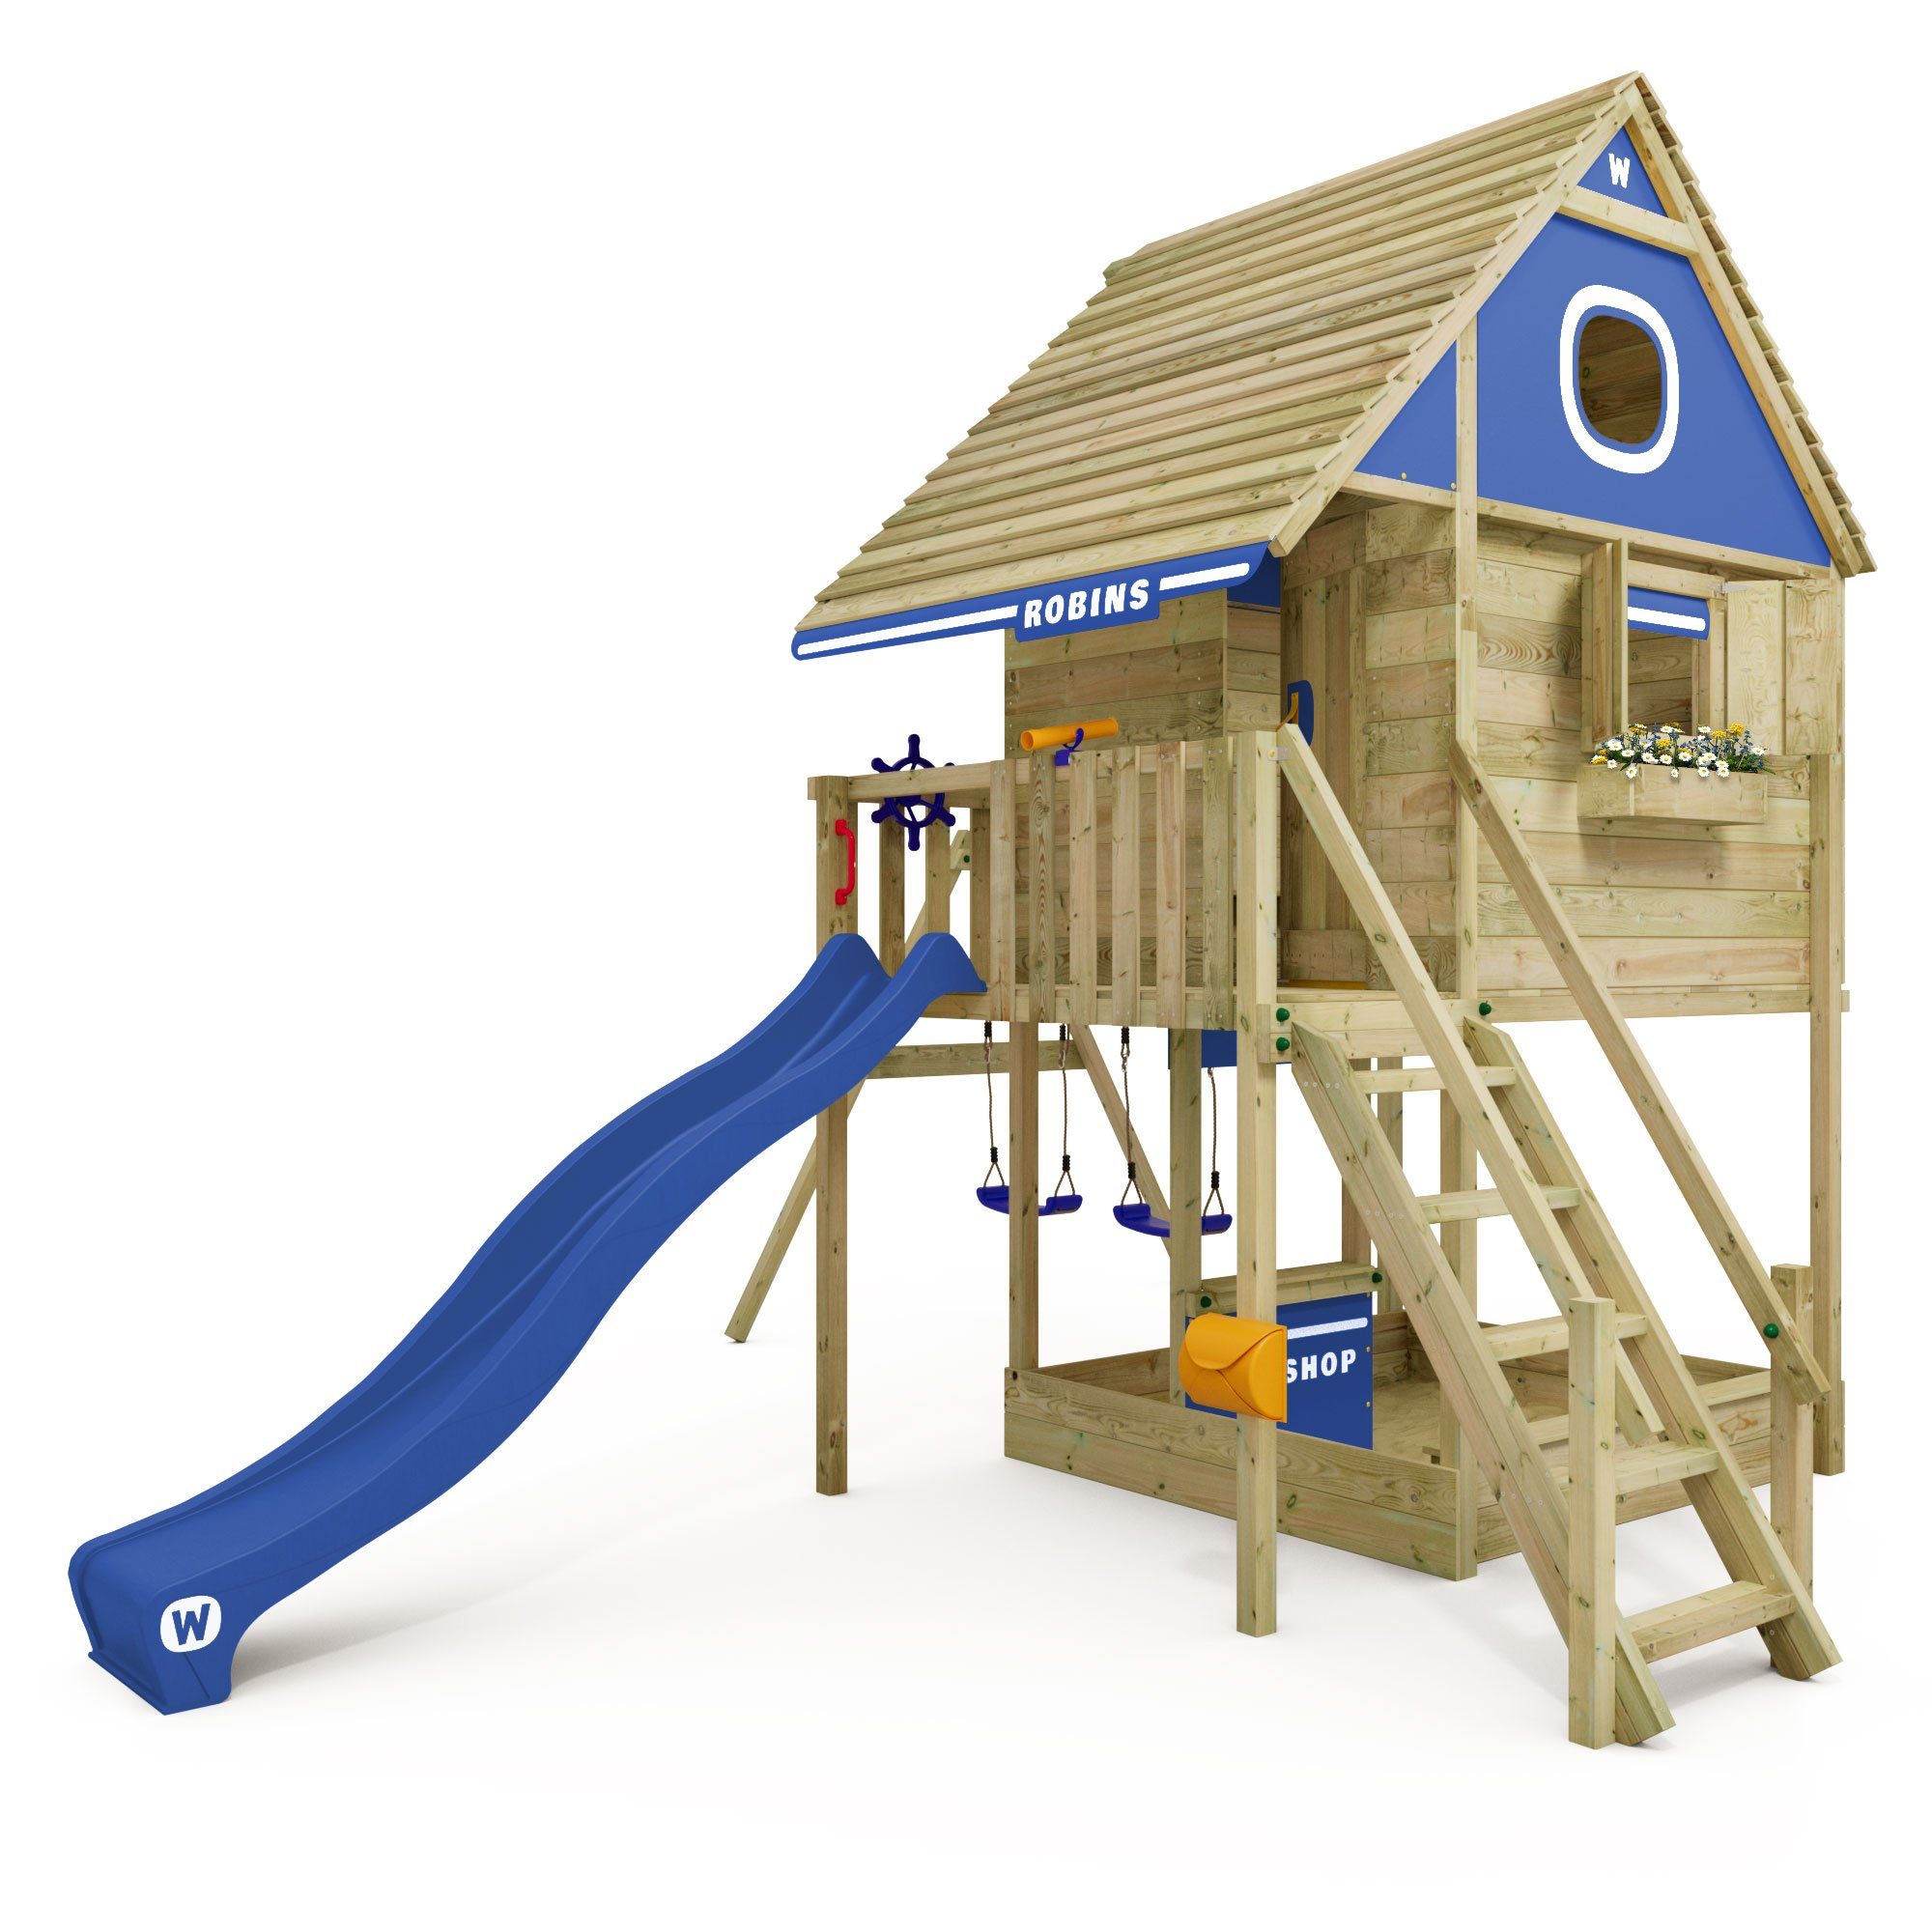 Wickey Klettergerüst Stelzenhaus Smart RiverHouse mit Schaukel & Rutsche, 10-Jahre Garantie*, Großes Spielhaus, Massive Treppe mit Handlauf blau